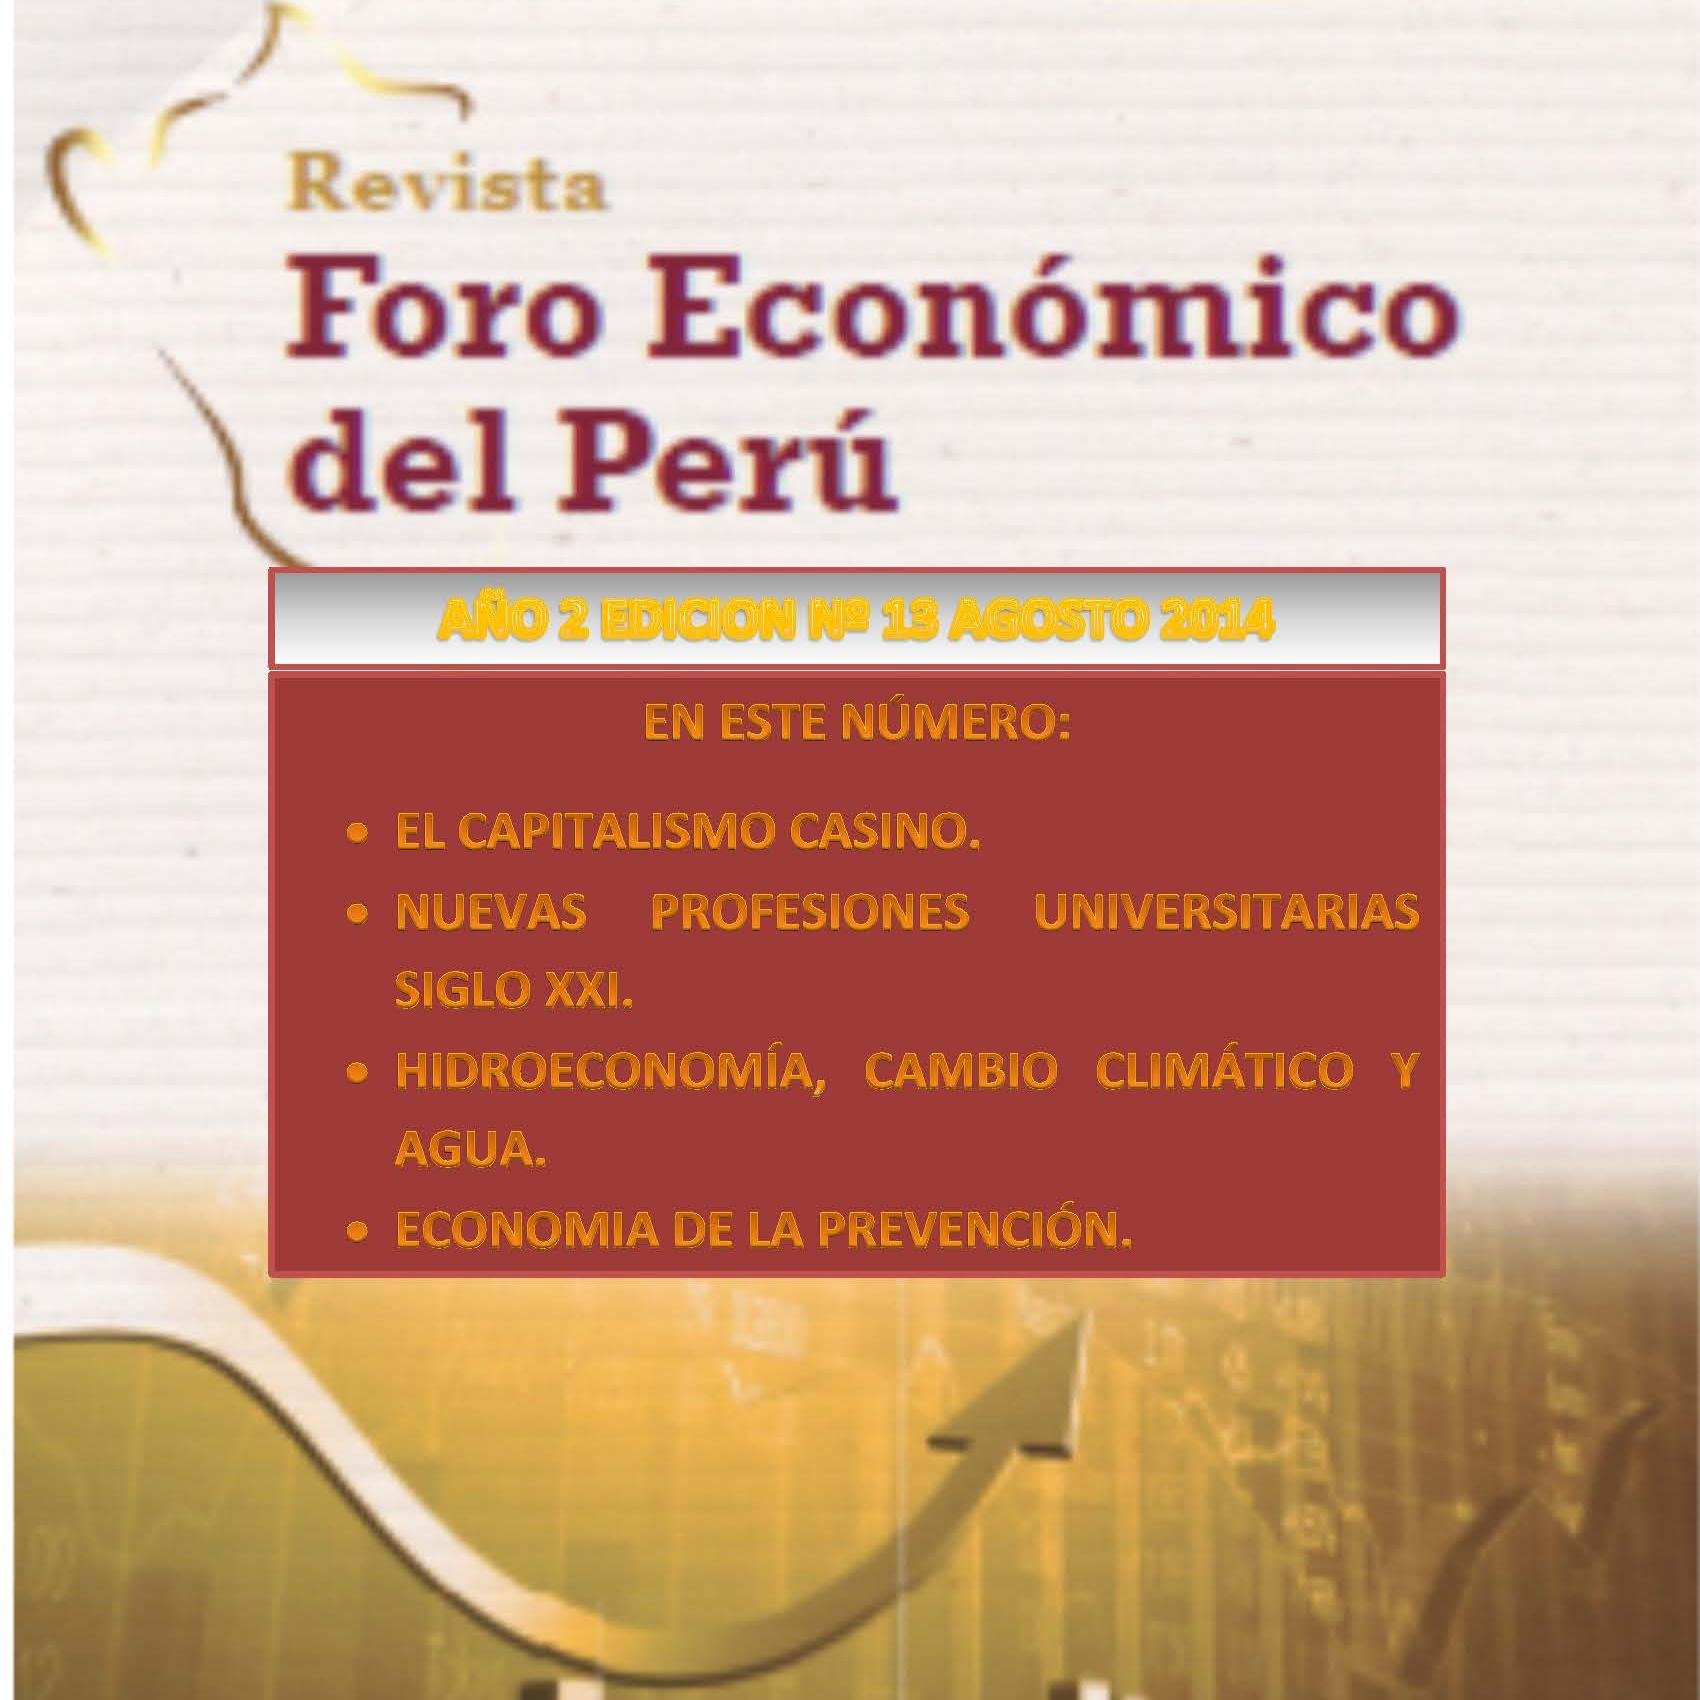 Espacio dedicado a la opinión de los economistas del Perú, red de apoyo a las publicaciones de la Revista Digital FORO ECONÓMICO DEL PERÚ.